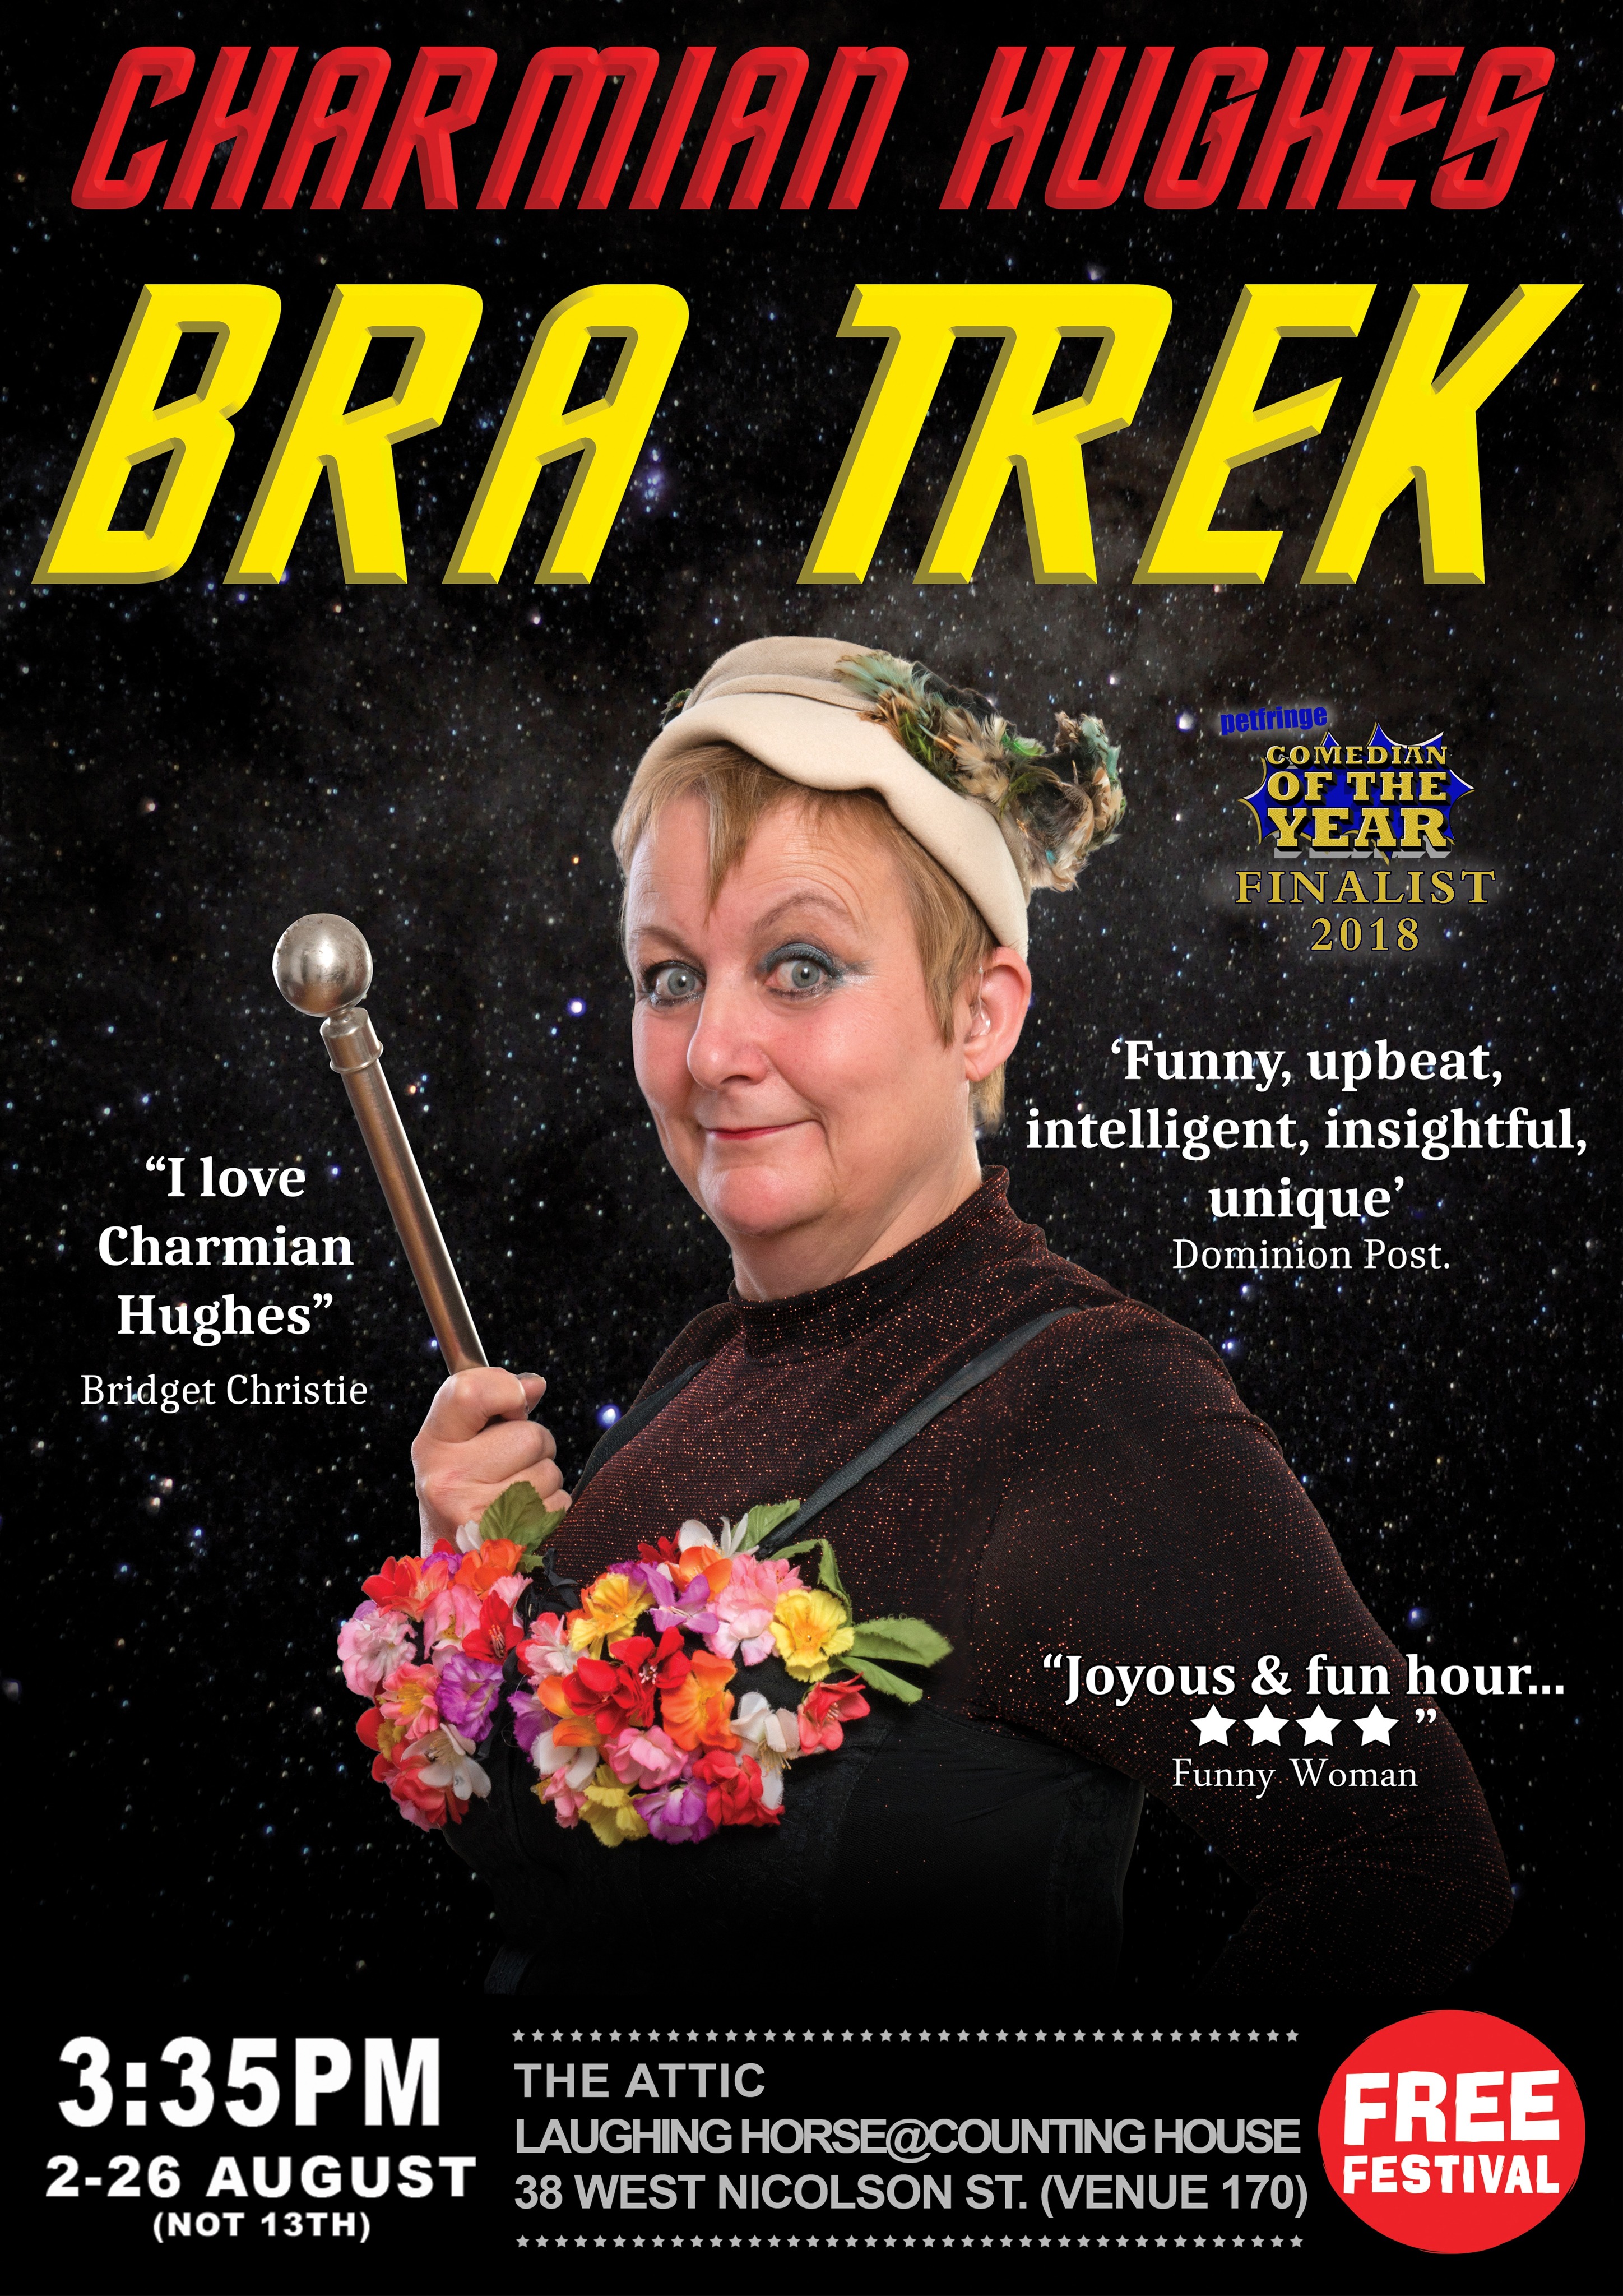 The poster for Charmian Hughes - Bra Trek